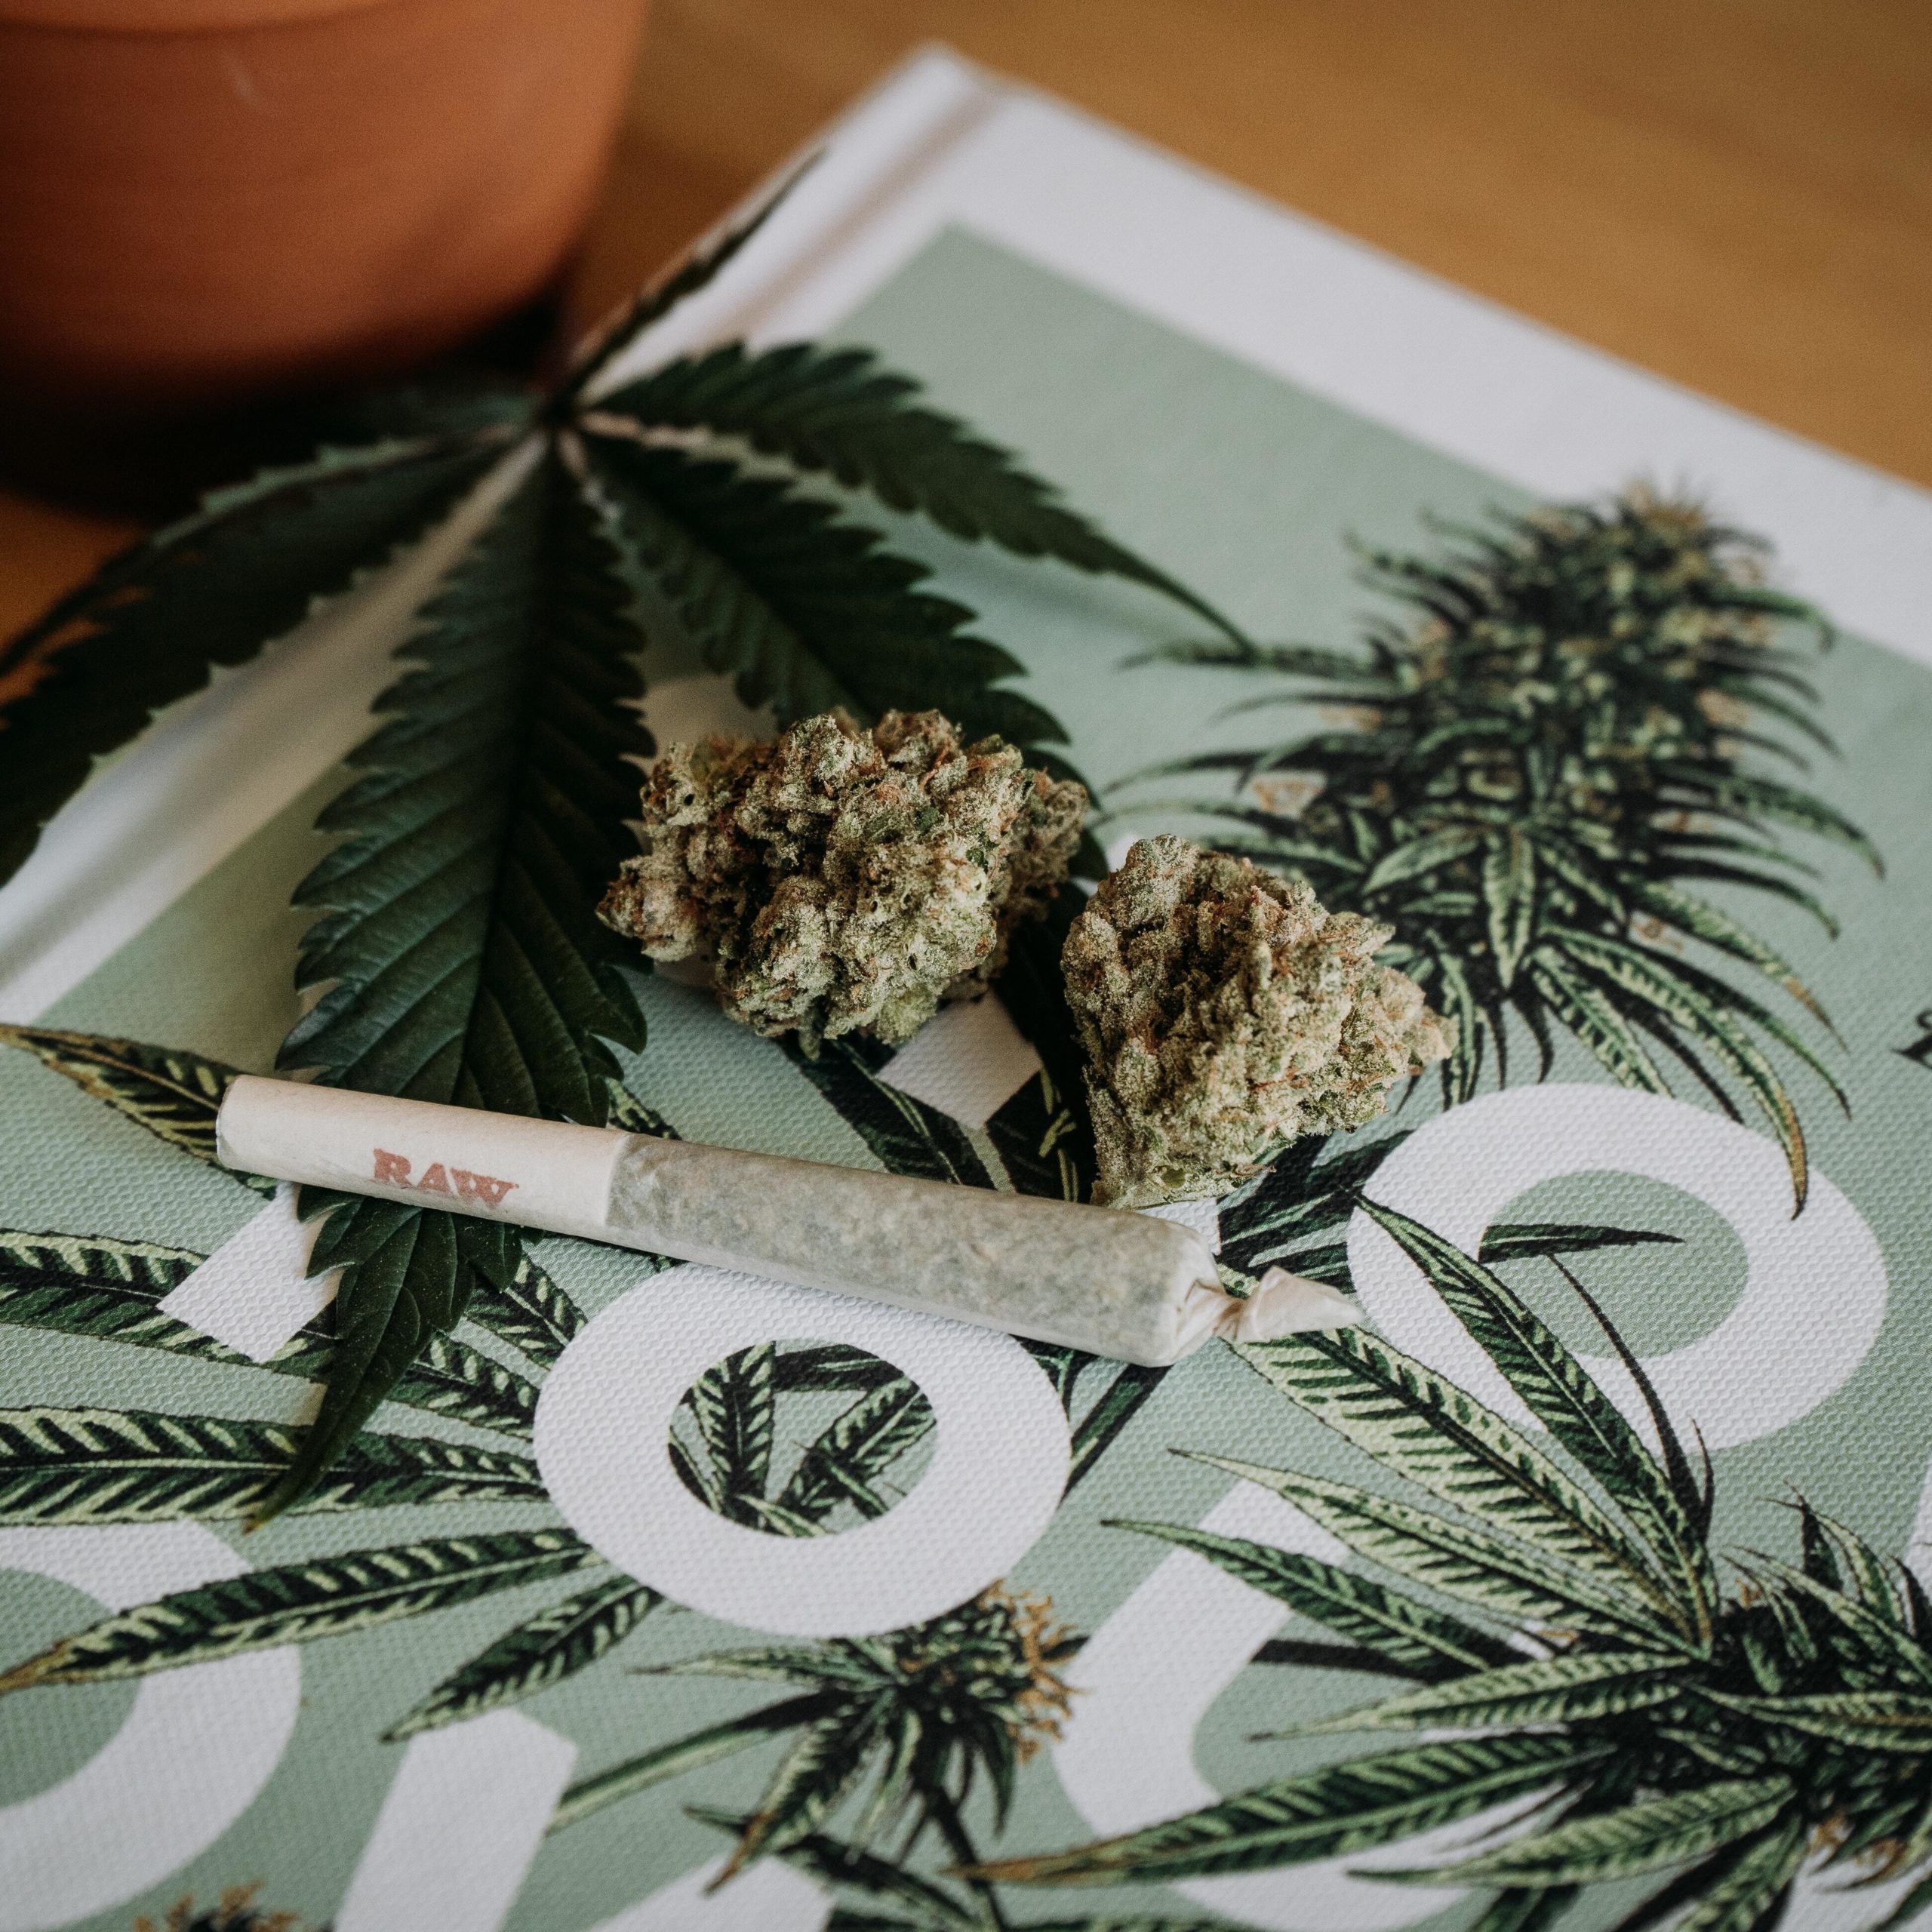 marijuana plant on the table